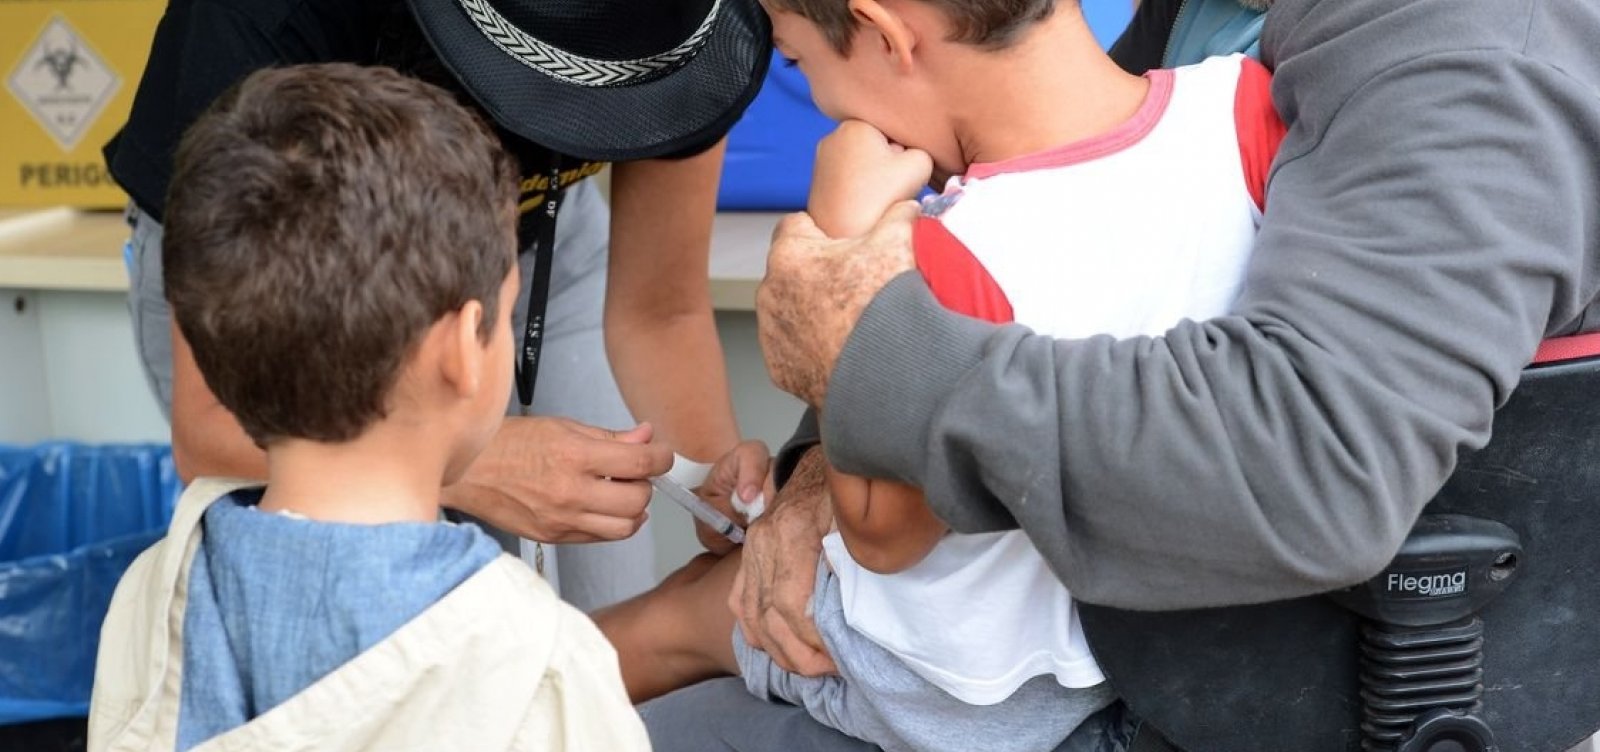 Gripe hospitalizou mais de 500 pessoas no Brasil